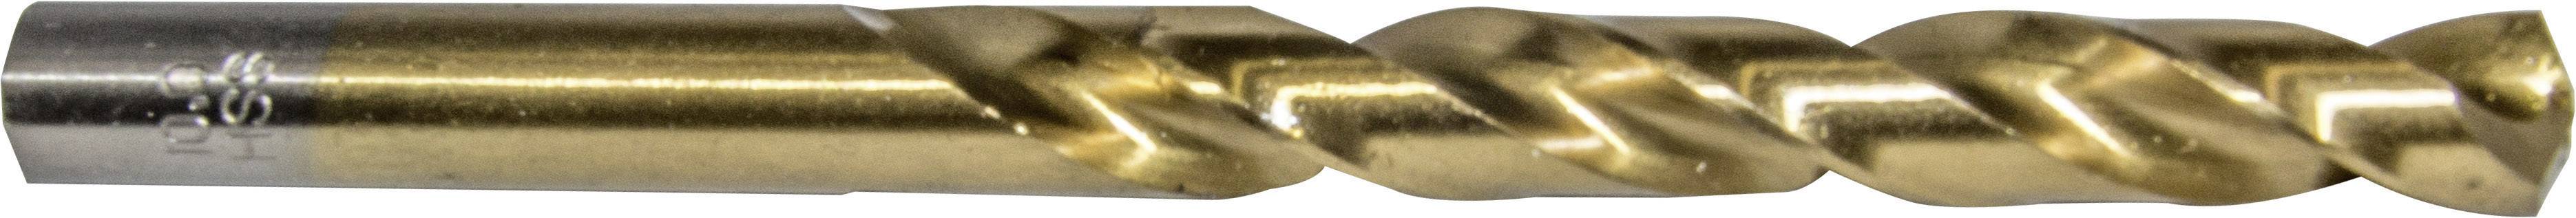 HELLER 29269 6 Metall-Spiralbohrer 1 Stück 7.5 mm Gesamtlänge 109 mm 1 St.